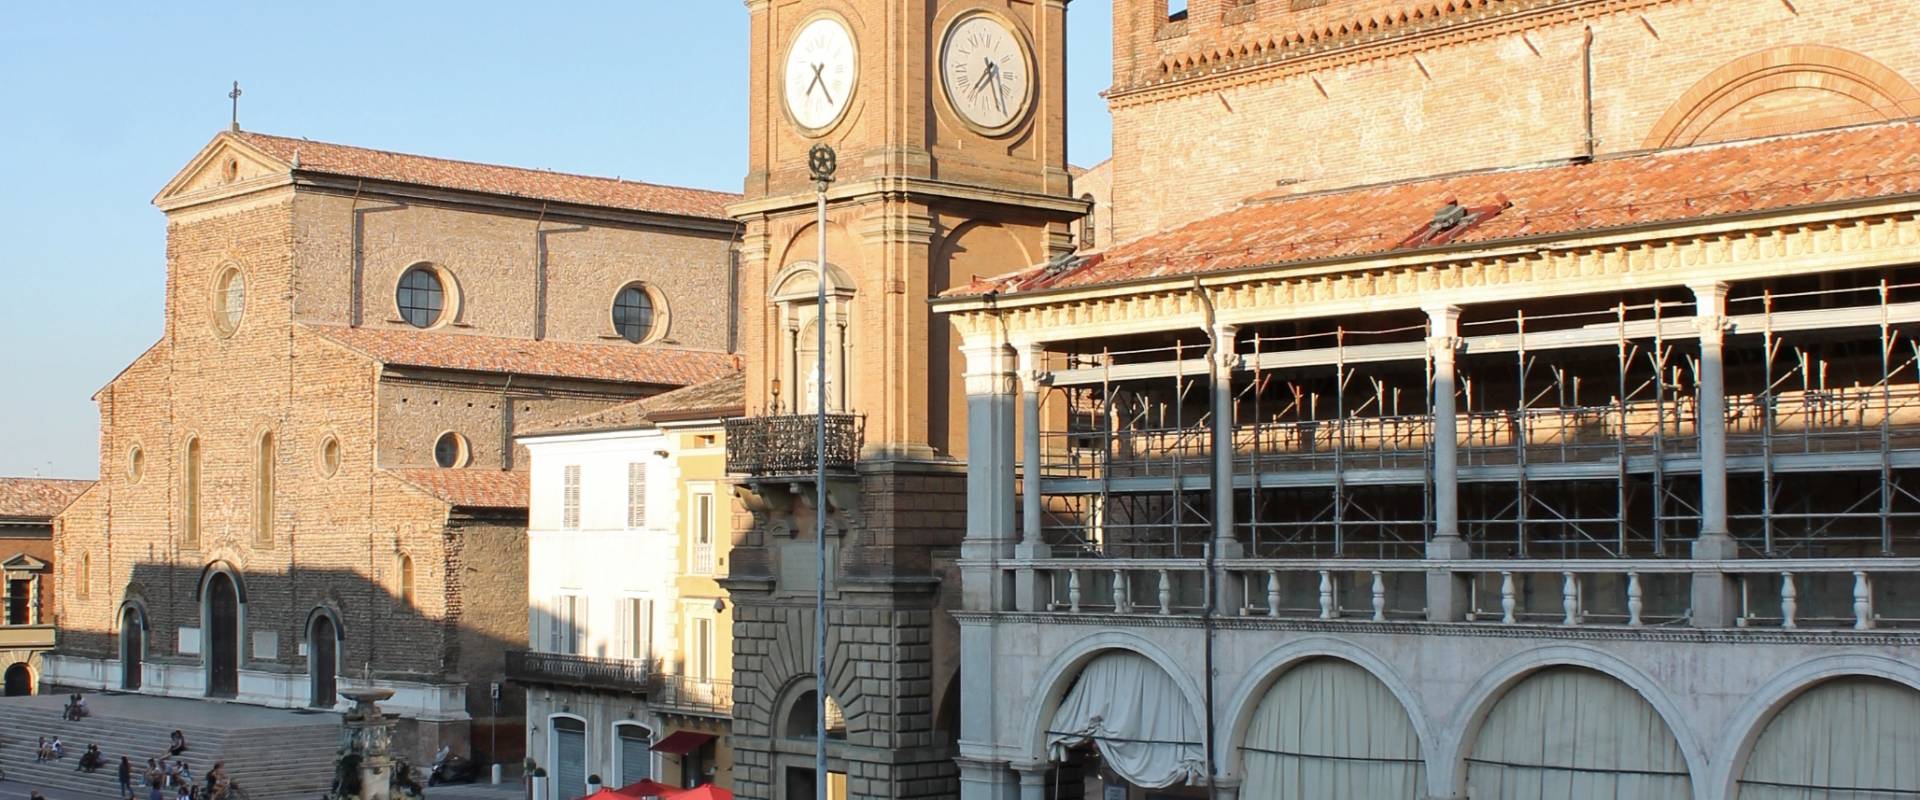 Faenza centro storico foto di RobertaSavolini